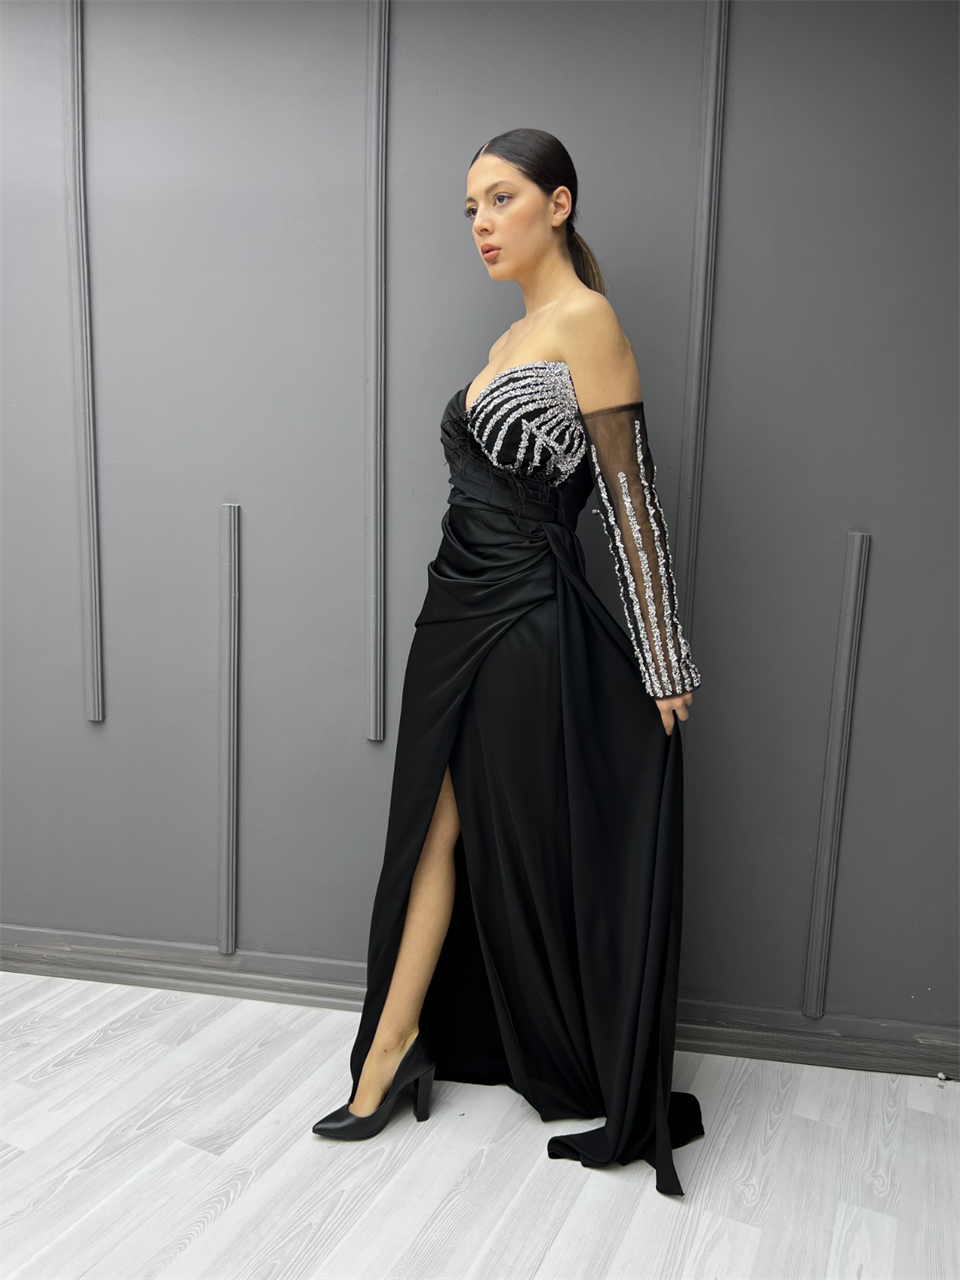 Takma Kol Payetli Elbise Siyah 3750,00 TL